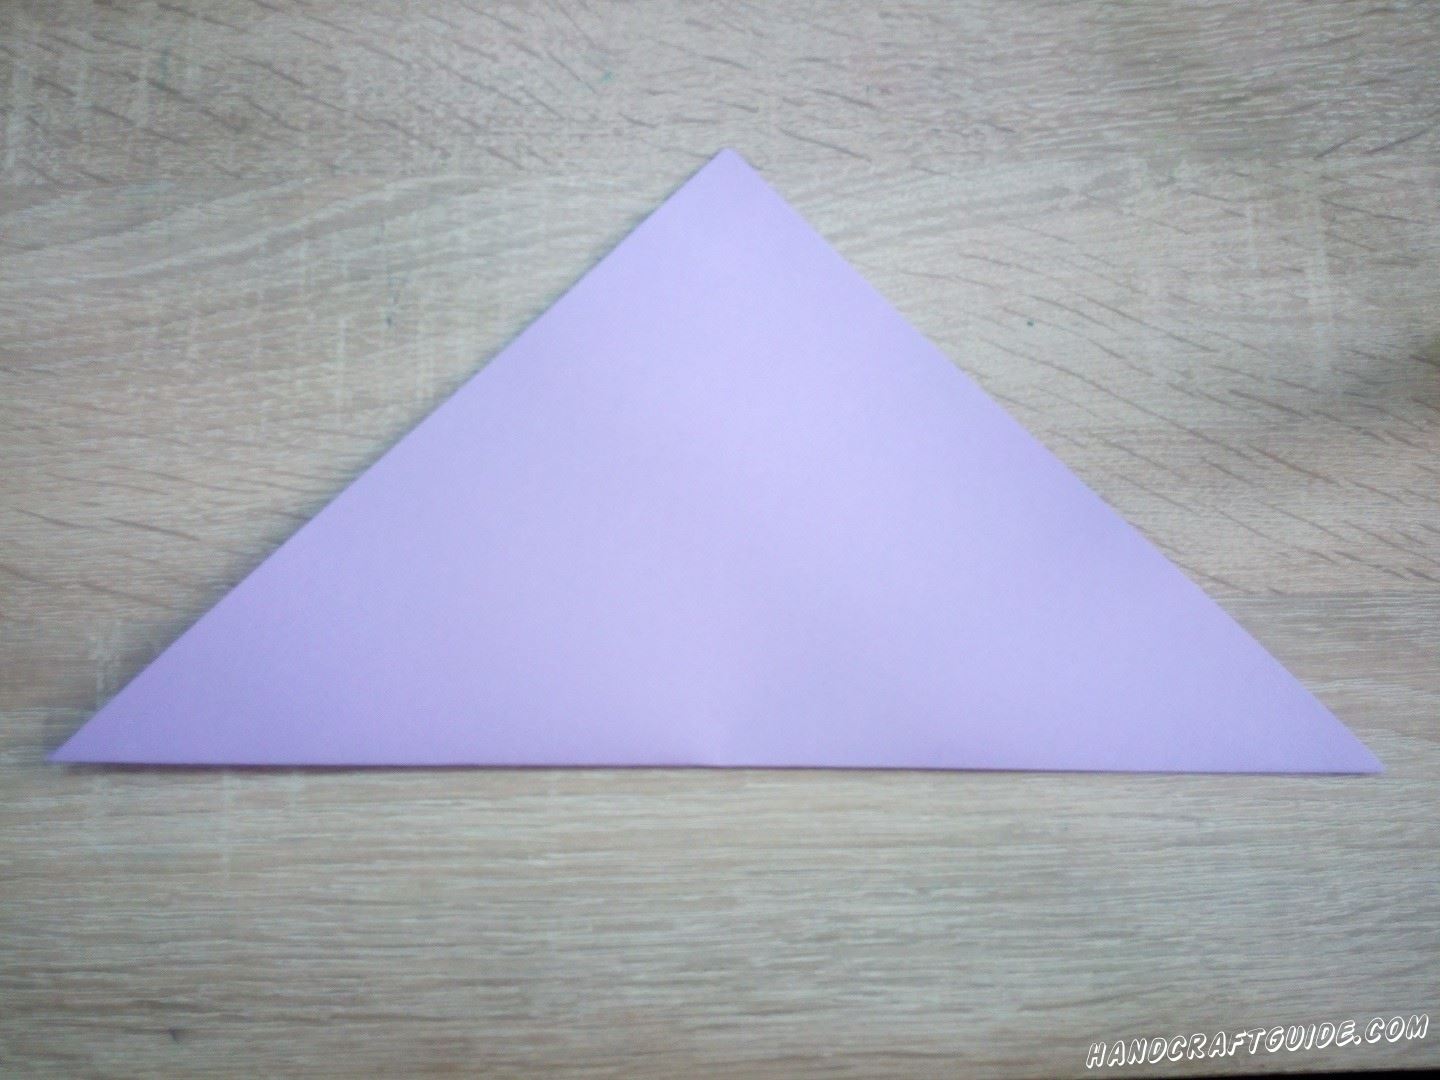 Возьмём бумагу для оригами или вырежем квадрат из цветной бумаги. Складываем треугольник